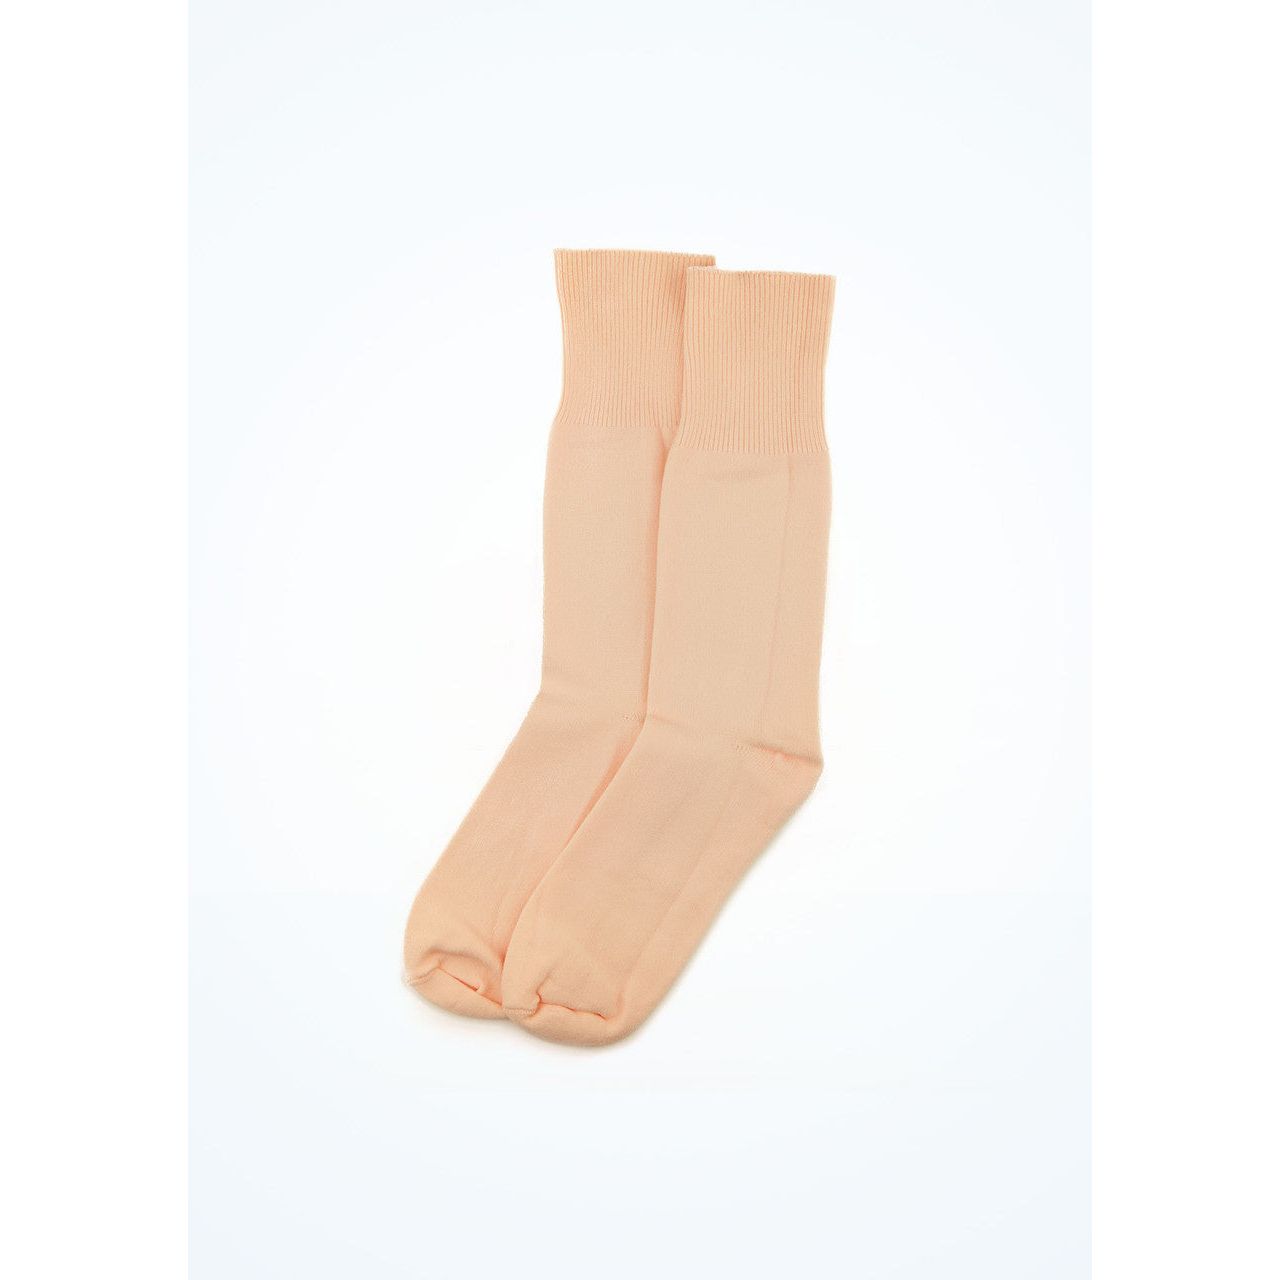 Tendu ballet socks